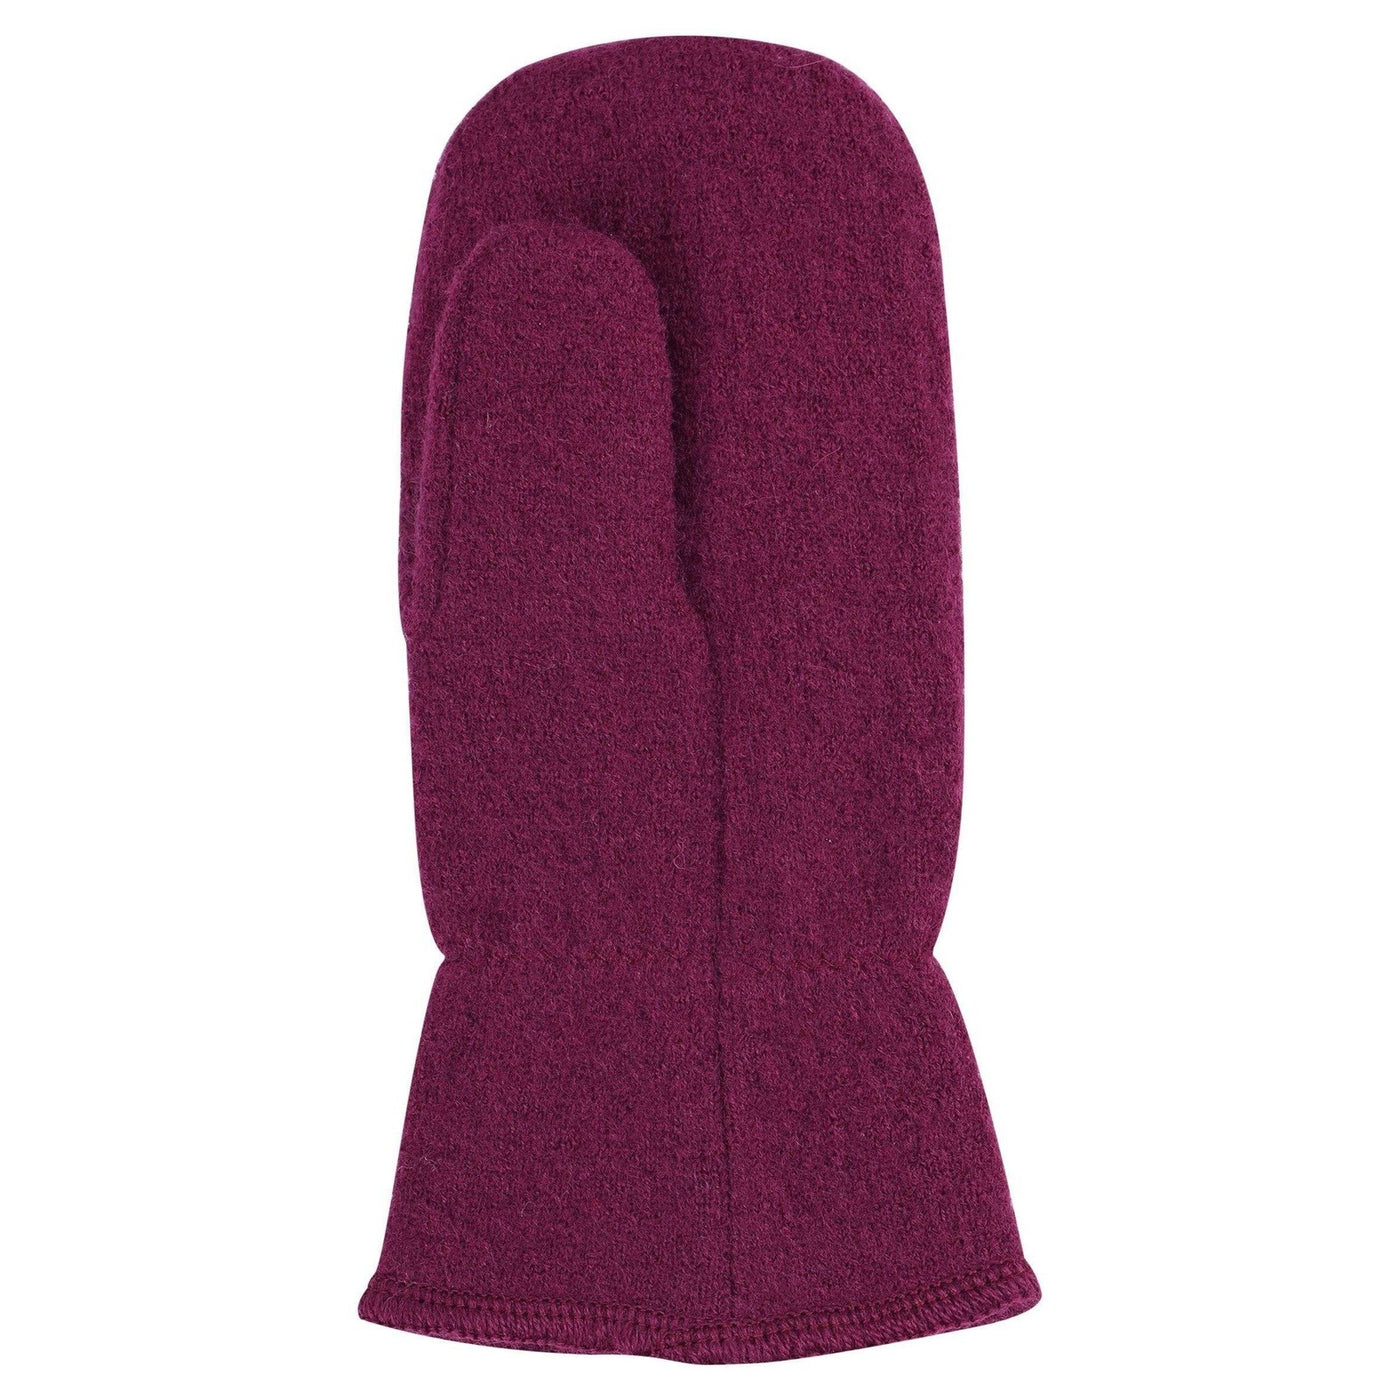 SnowKids Accessories Reima Hangen Knitted Wool Mittens - Deep Purple